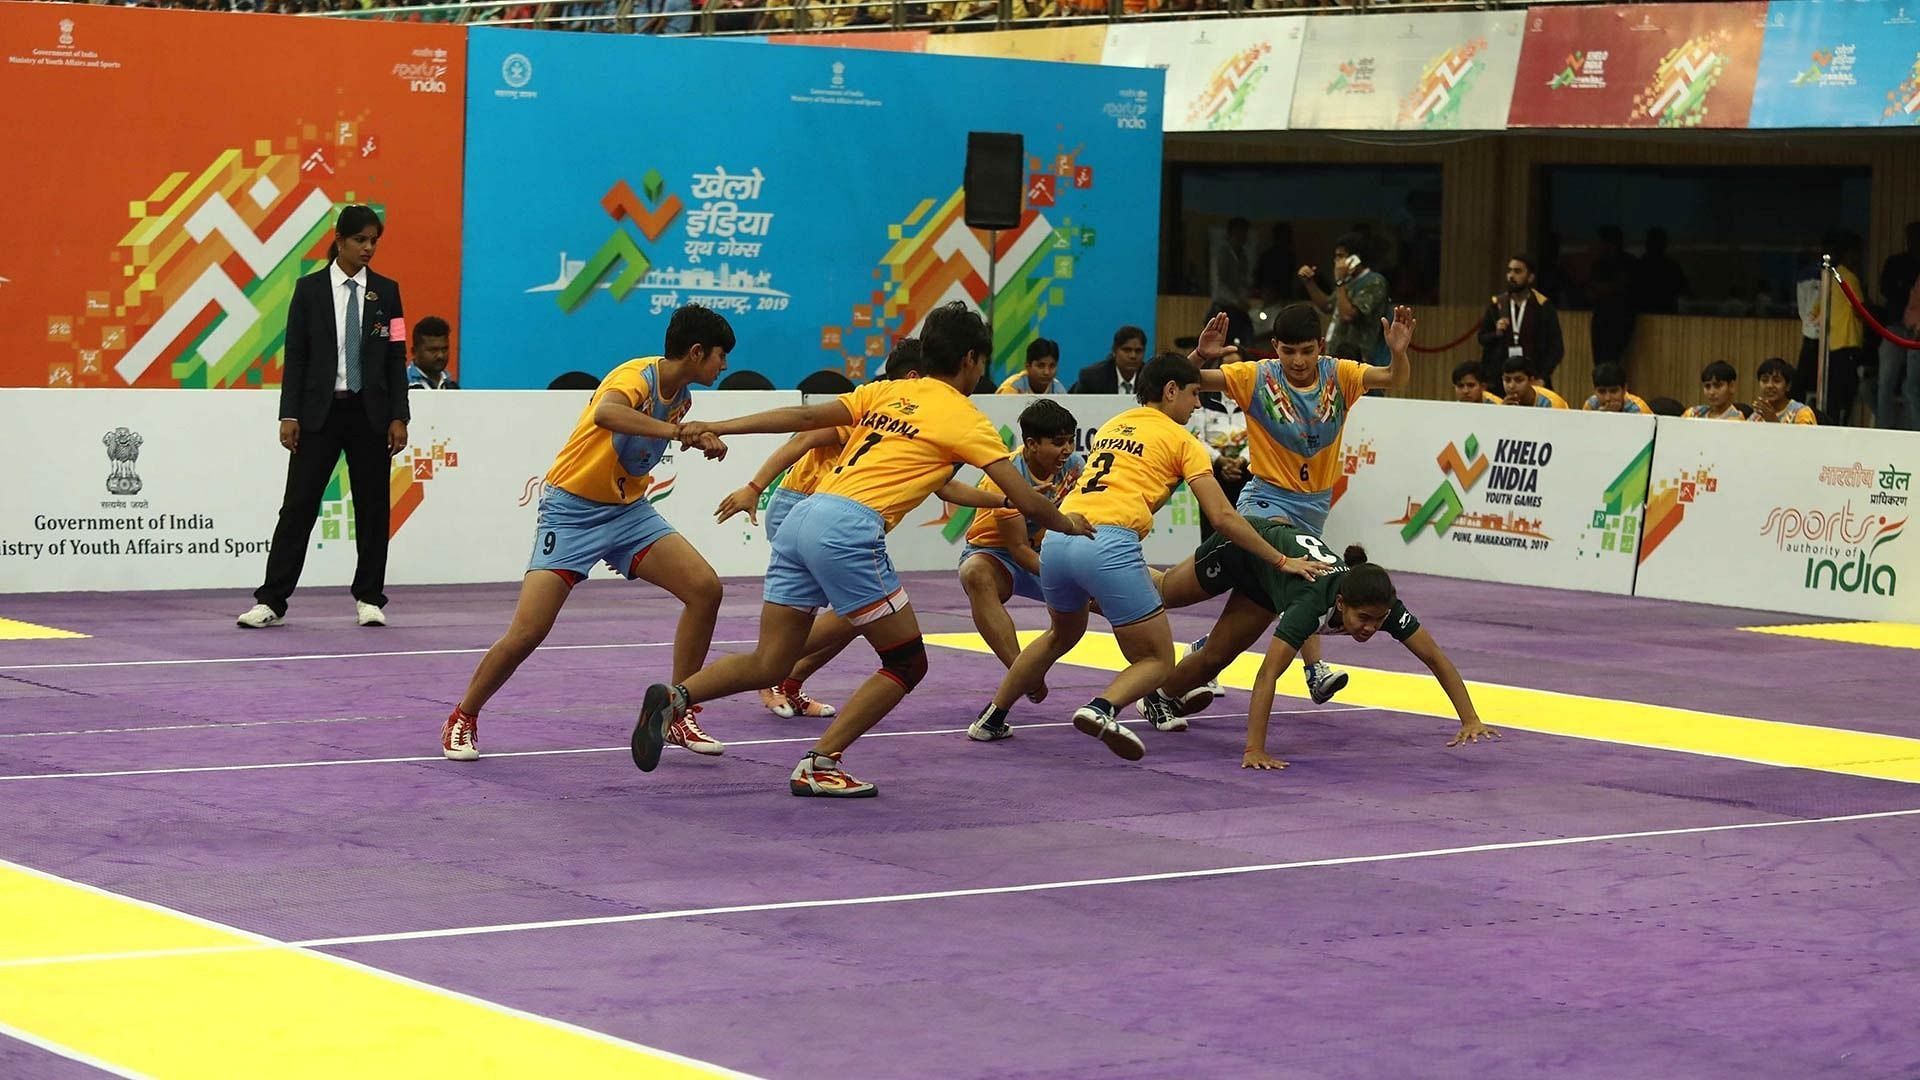 Kabaddi At Khelo India Youth Games 2019